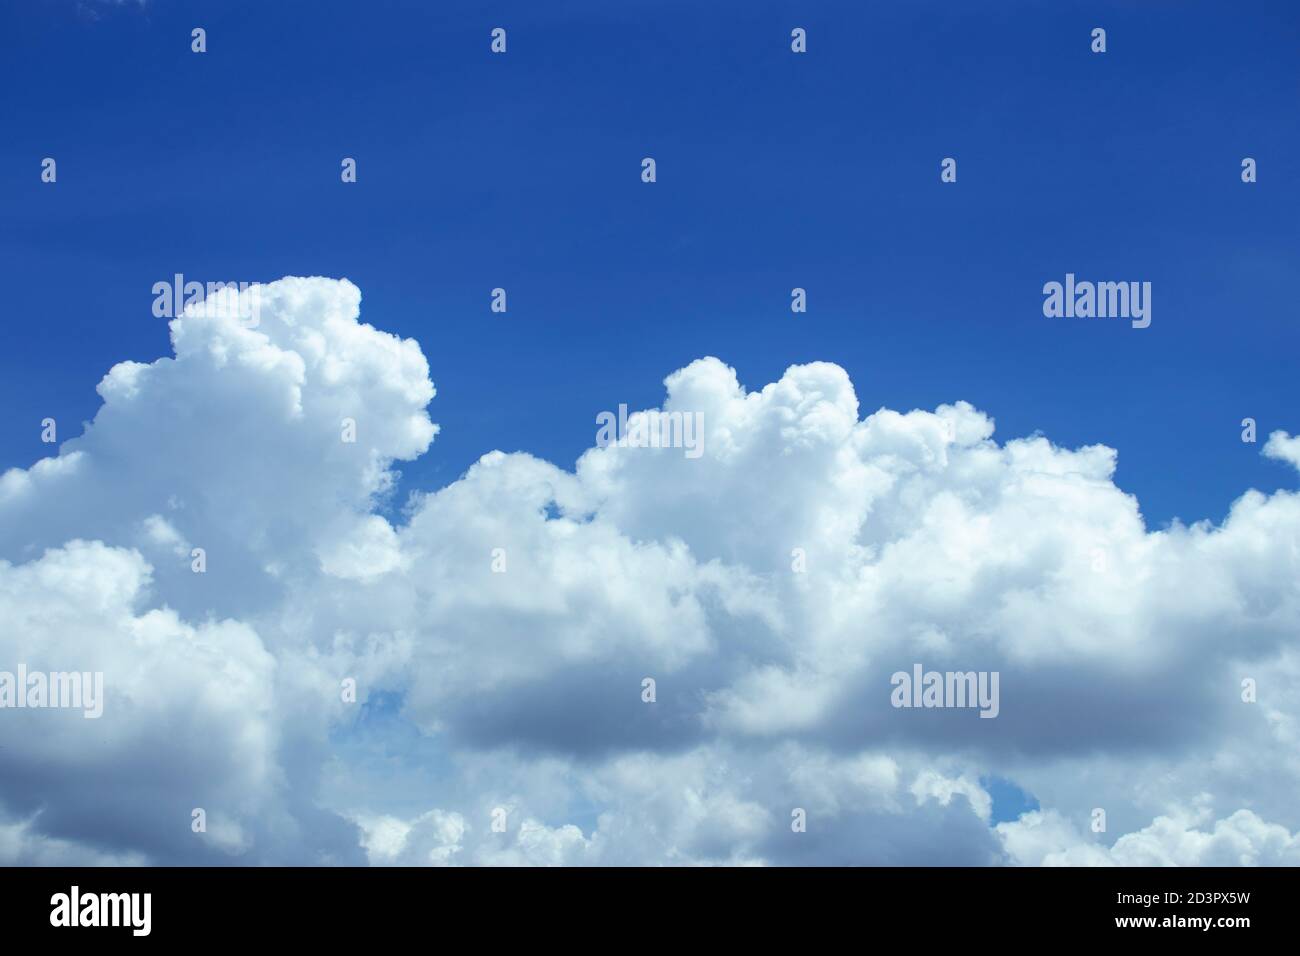 les nuages spectaculaires sont également d'une clarté cristalline. Image de nuages, arrière-plan magnifique. Banque D'Images